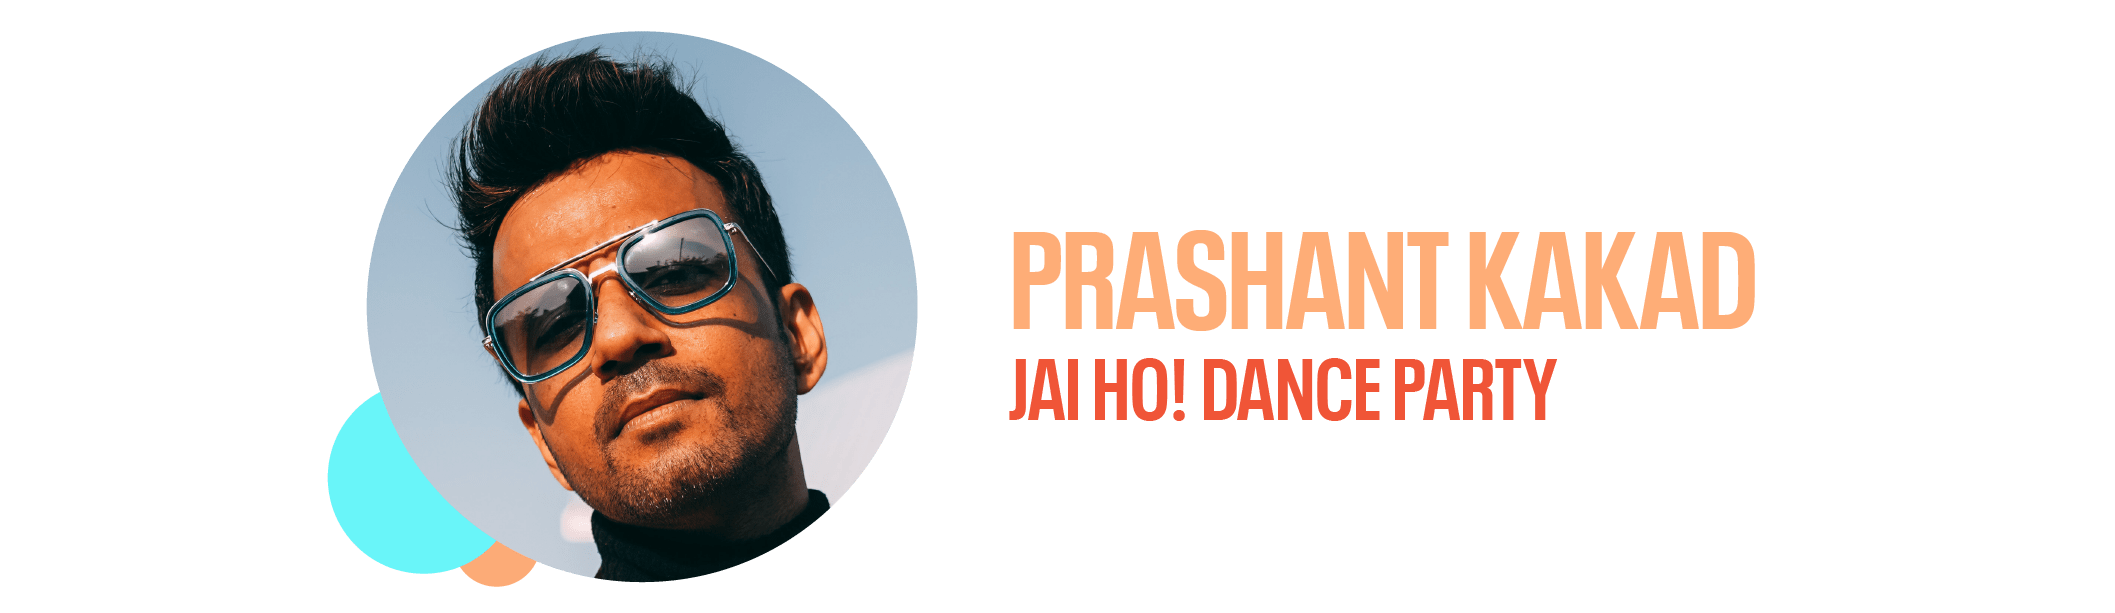 Prashant Kakad, Jai ho! Dance Party